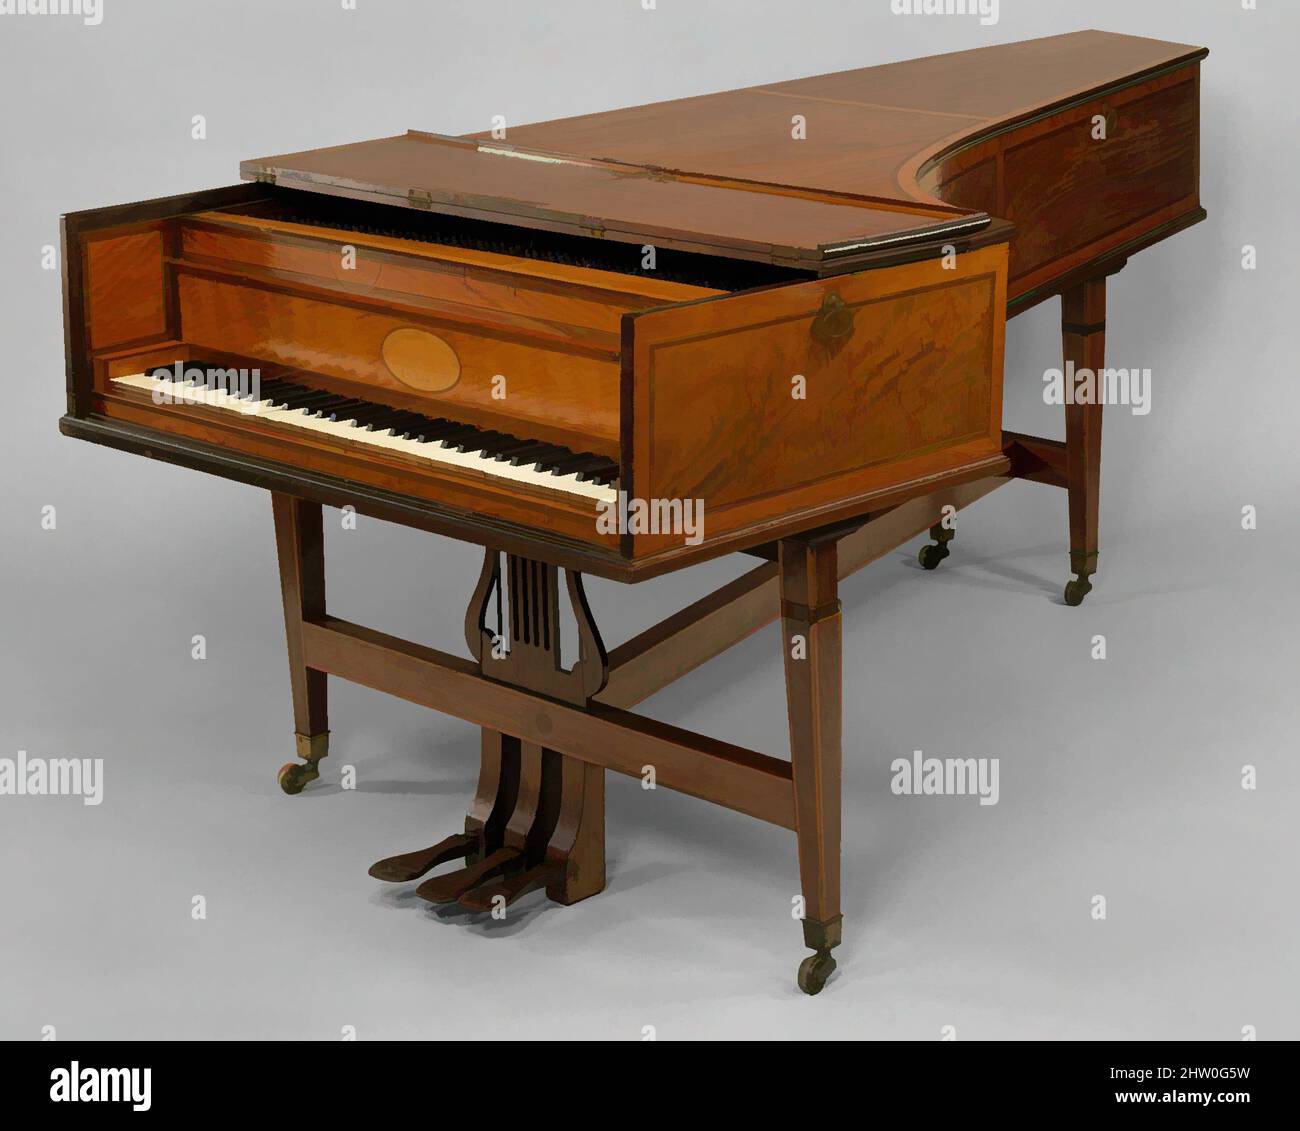 Kunst inspiriert von Grand Piano, 1808, London, England, Holz und verschiedene Materialien, Gehäuse L. (senkrecht zur Tastatur): 227,3 cm (89-1/2 in.); Gehäuse W. (Parellel zur Tastatur): 106,9 (42-1/8 in.); Gehäuse H. (einschließlich Beine): 91 cm (35-7/8 in.): Souding L. der oberen Saite: 7,4 cm (3 in, Classic Works Modernized by Artotop with a Spritzer of Modernity. Formen, Farbe und Wert, auffällige visuelle Wirkung auf Kunst. Emotionen durch Freiheit von Kunstwerken auf zeitgemäße Weise. Eine zeitlose Botschaft, die eine wild kreative neue Richtung verfolgt. Künstler, die sich dem digitalen Medium zuwenden und die Artotop NFT erschaffen Stockfoto